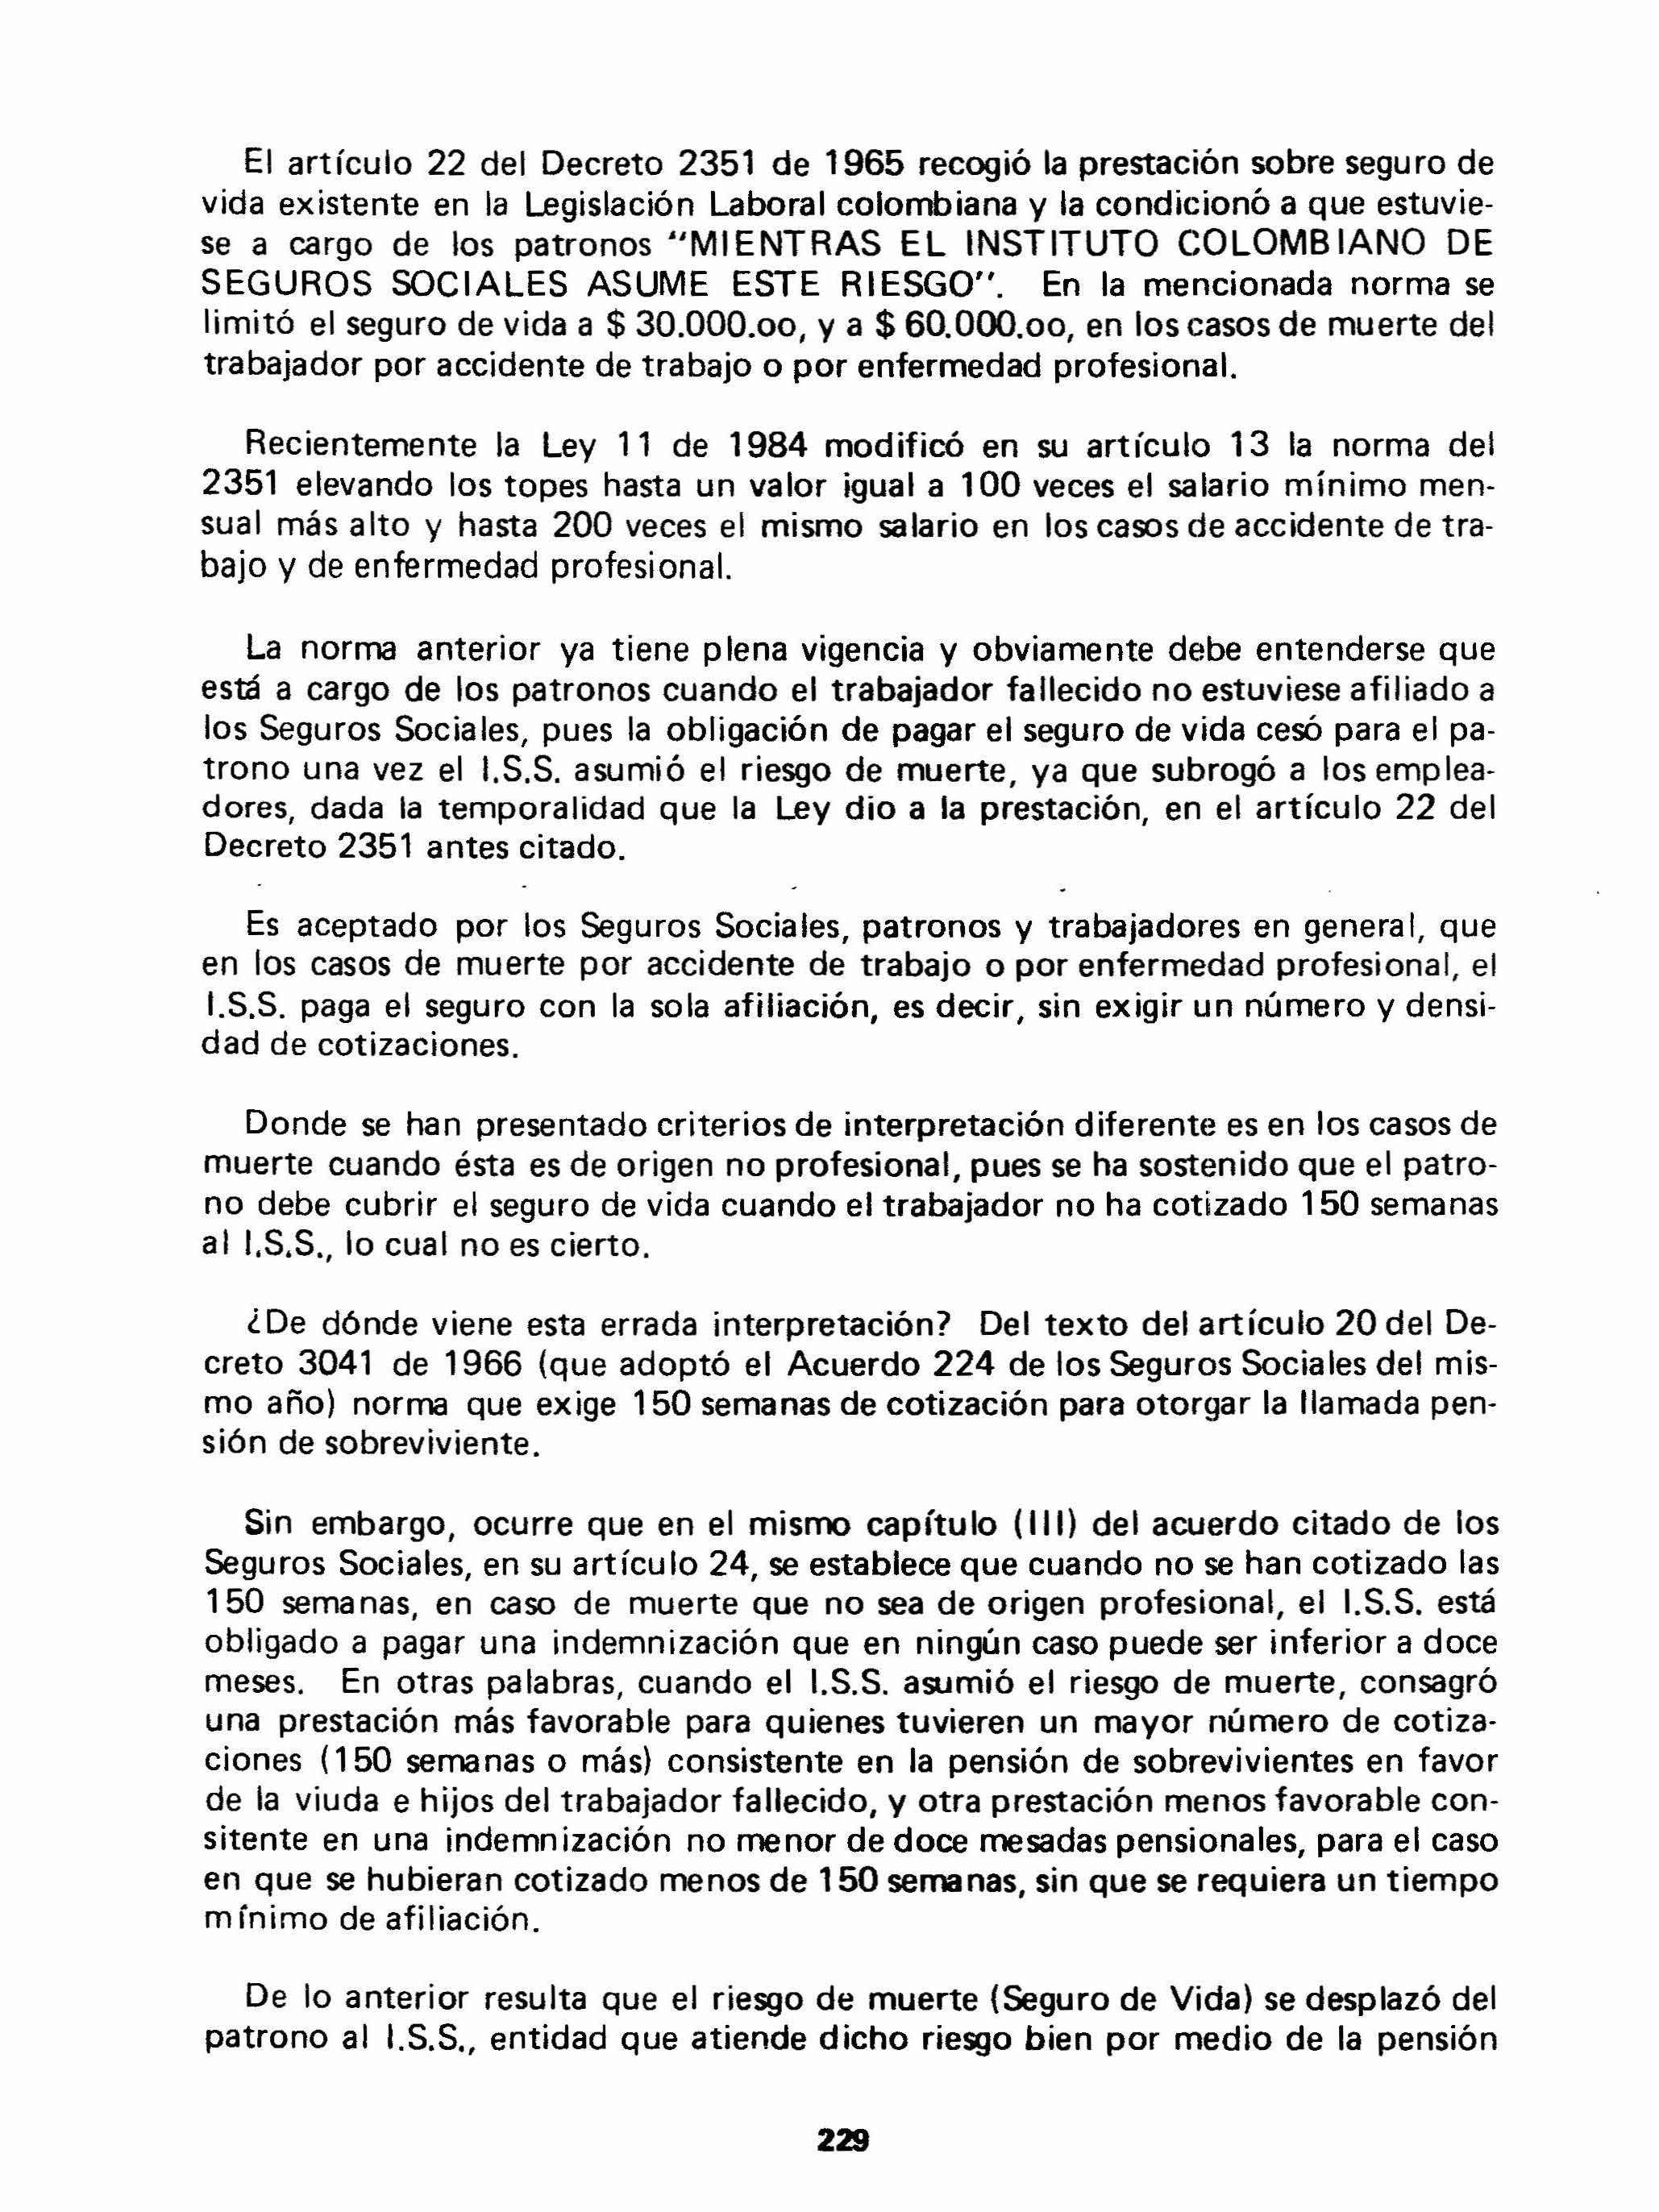 El artículo 22 del Decreto 2351 de 1965 recogió la prestación sobre seguro de vida existente en la Legislación Laboral colombiana y la condicionó a que estuviese a cargo de los patronos "MIENTRAS EL